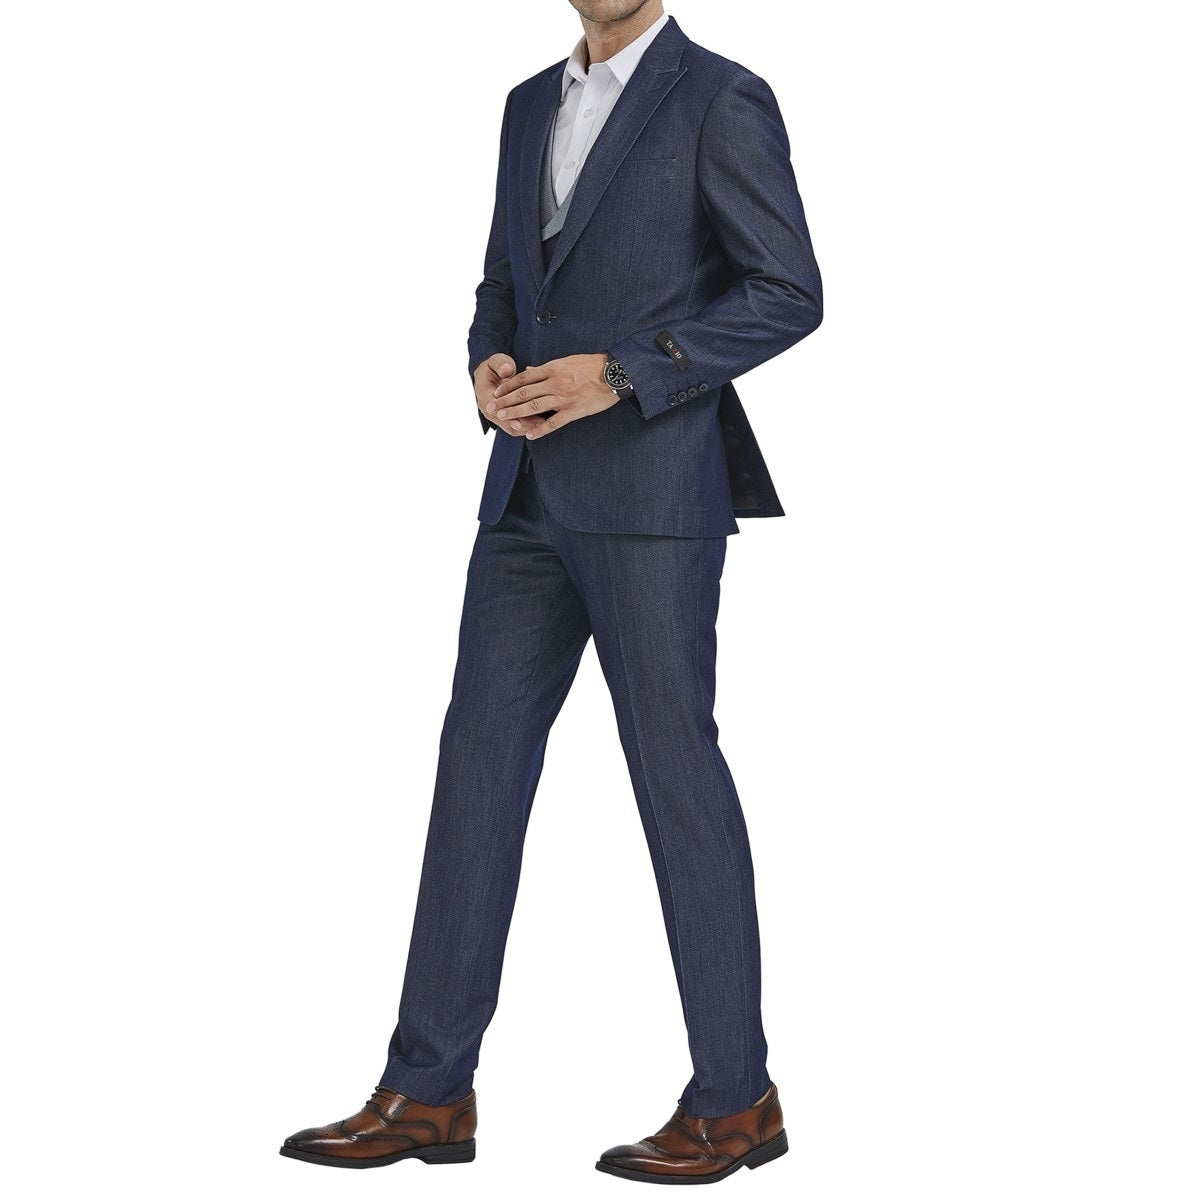 Traje Formal para Hombre TA-M347SK-02 - Formal Suit for Men